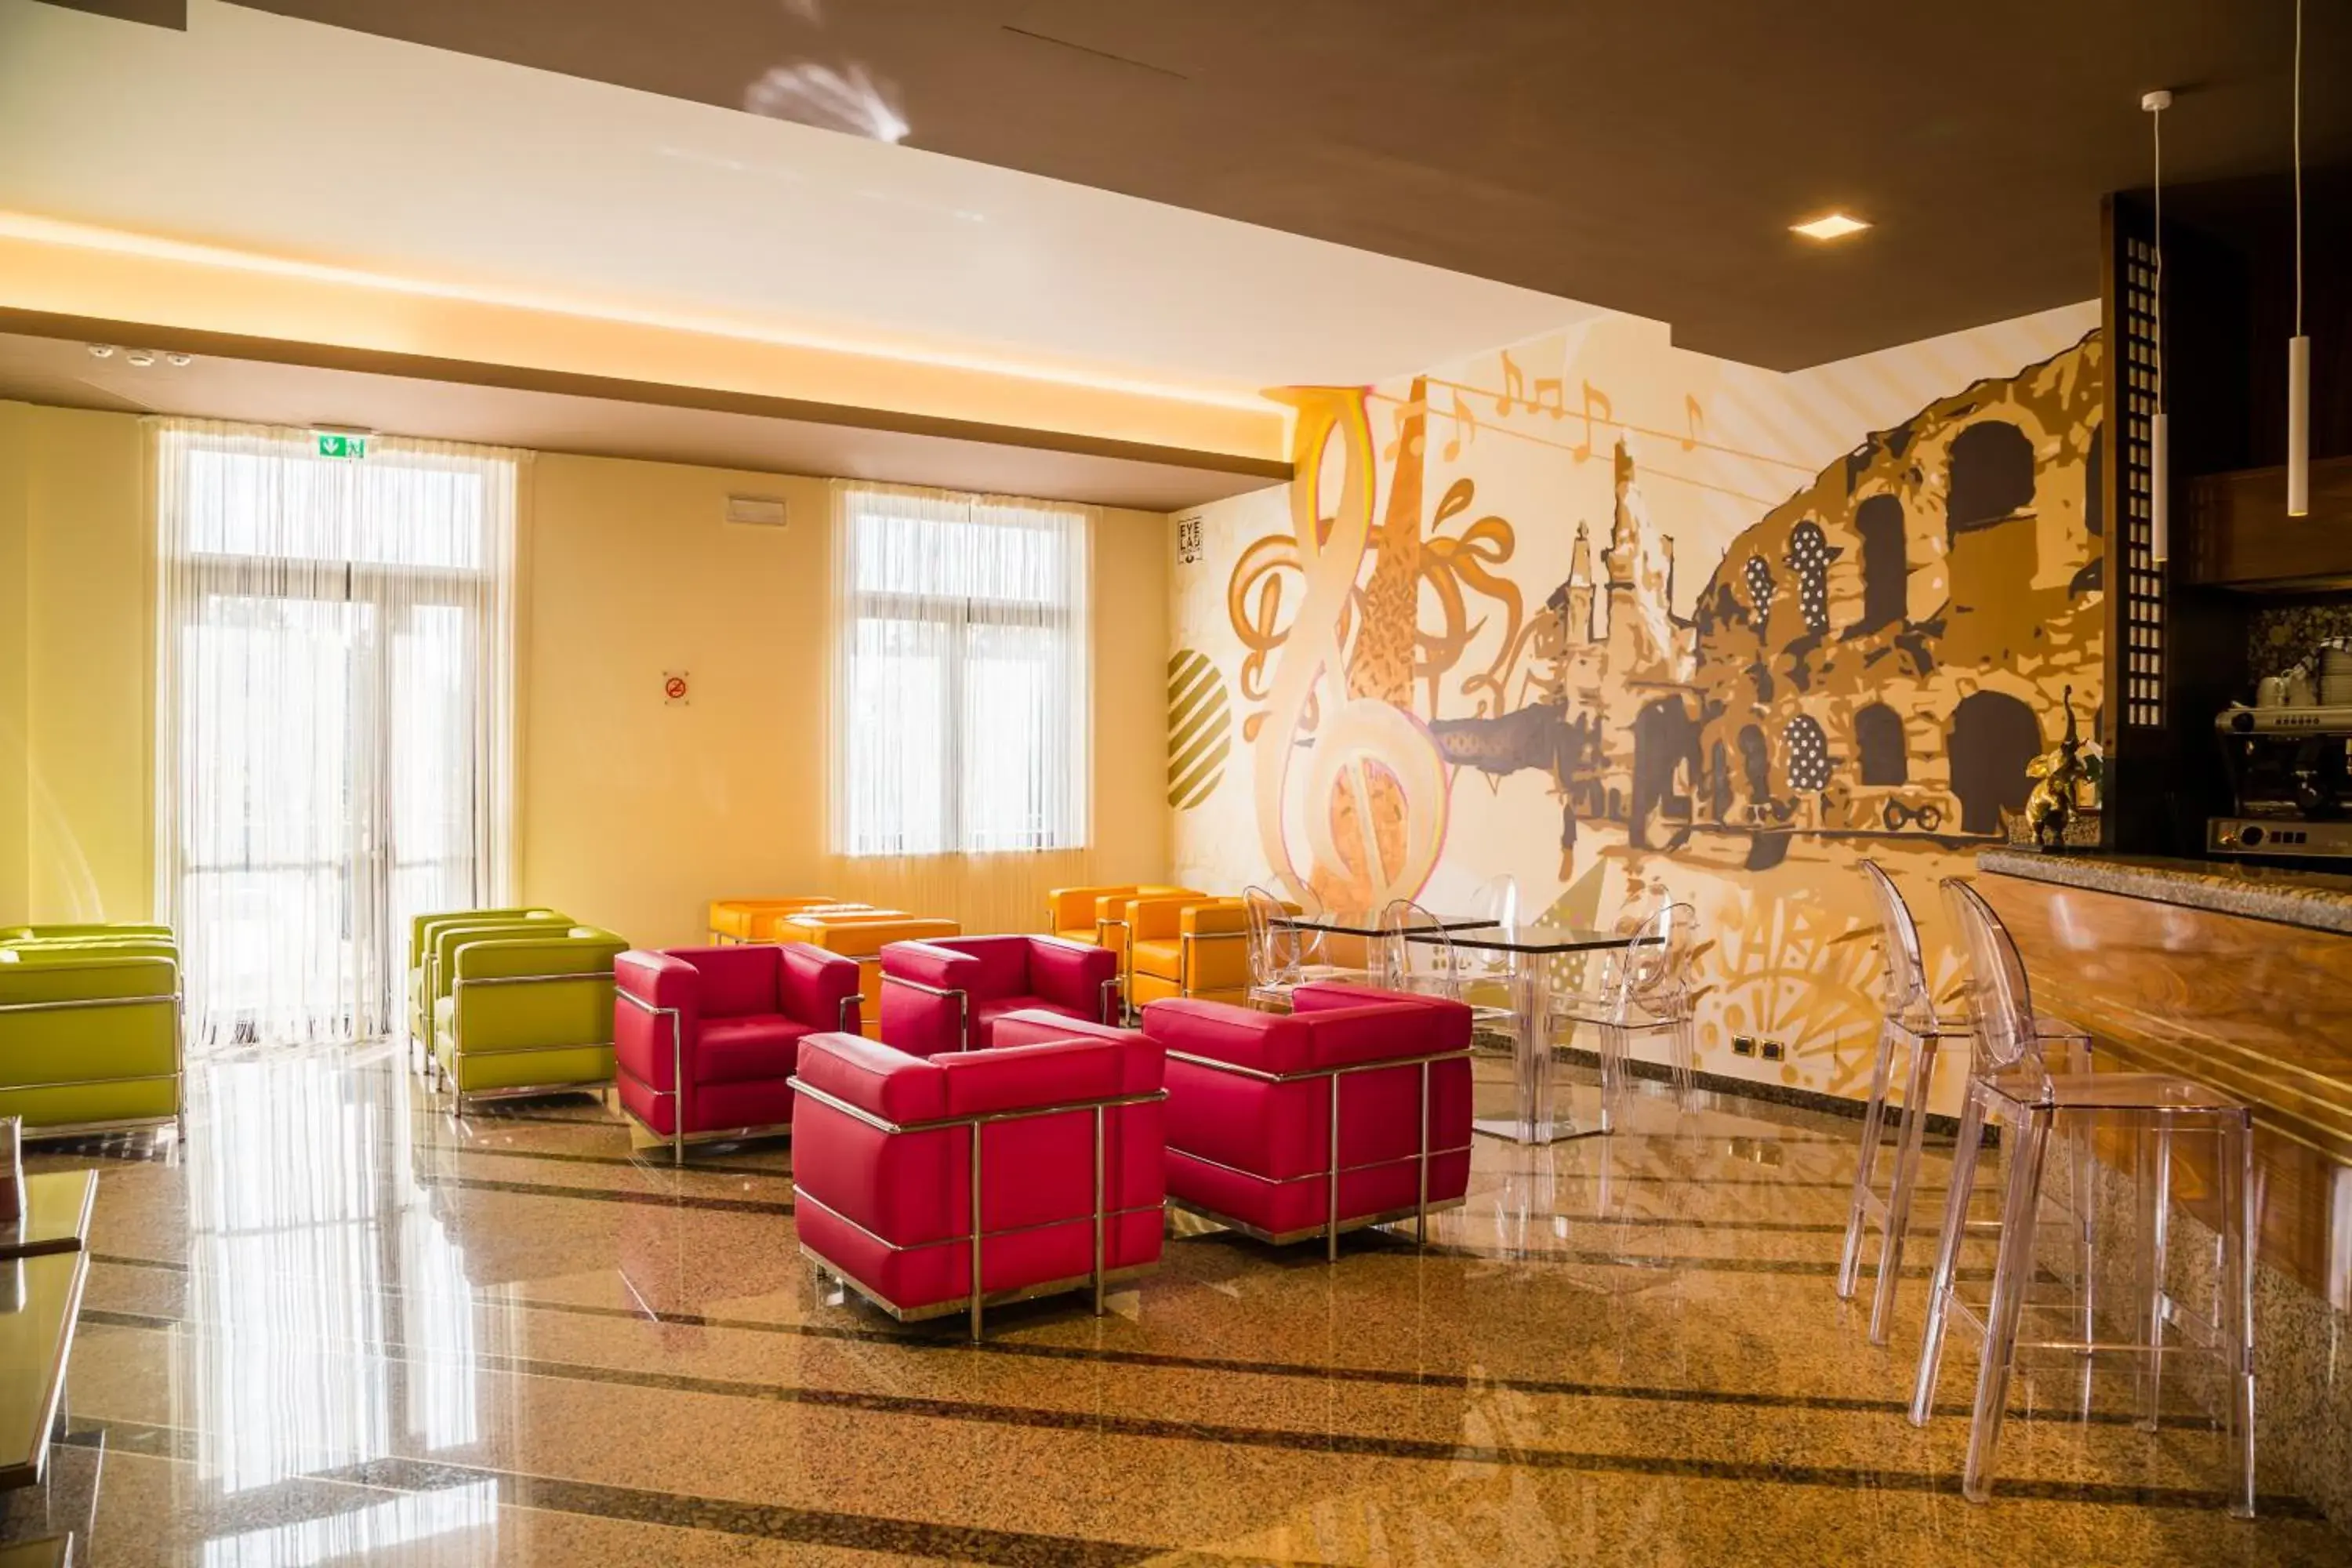 Lobby or reception in Hotel Brandoli